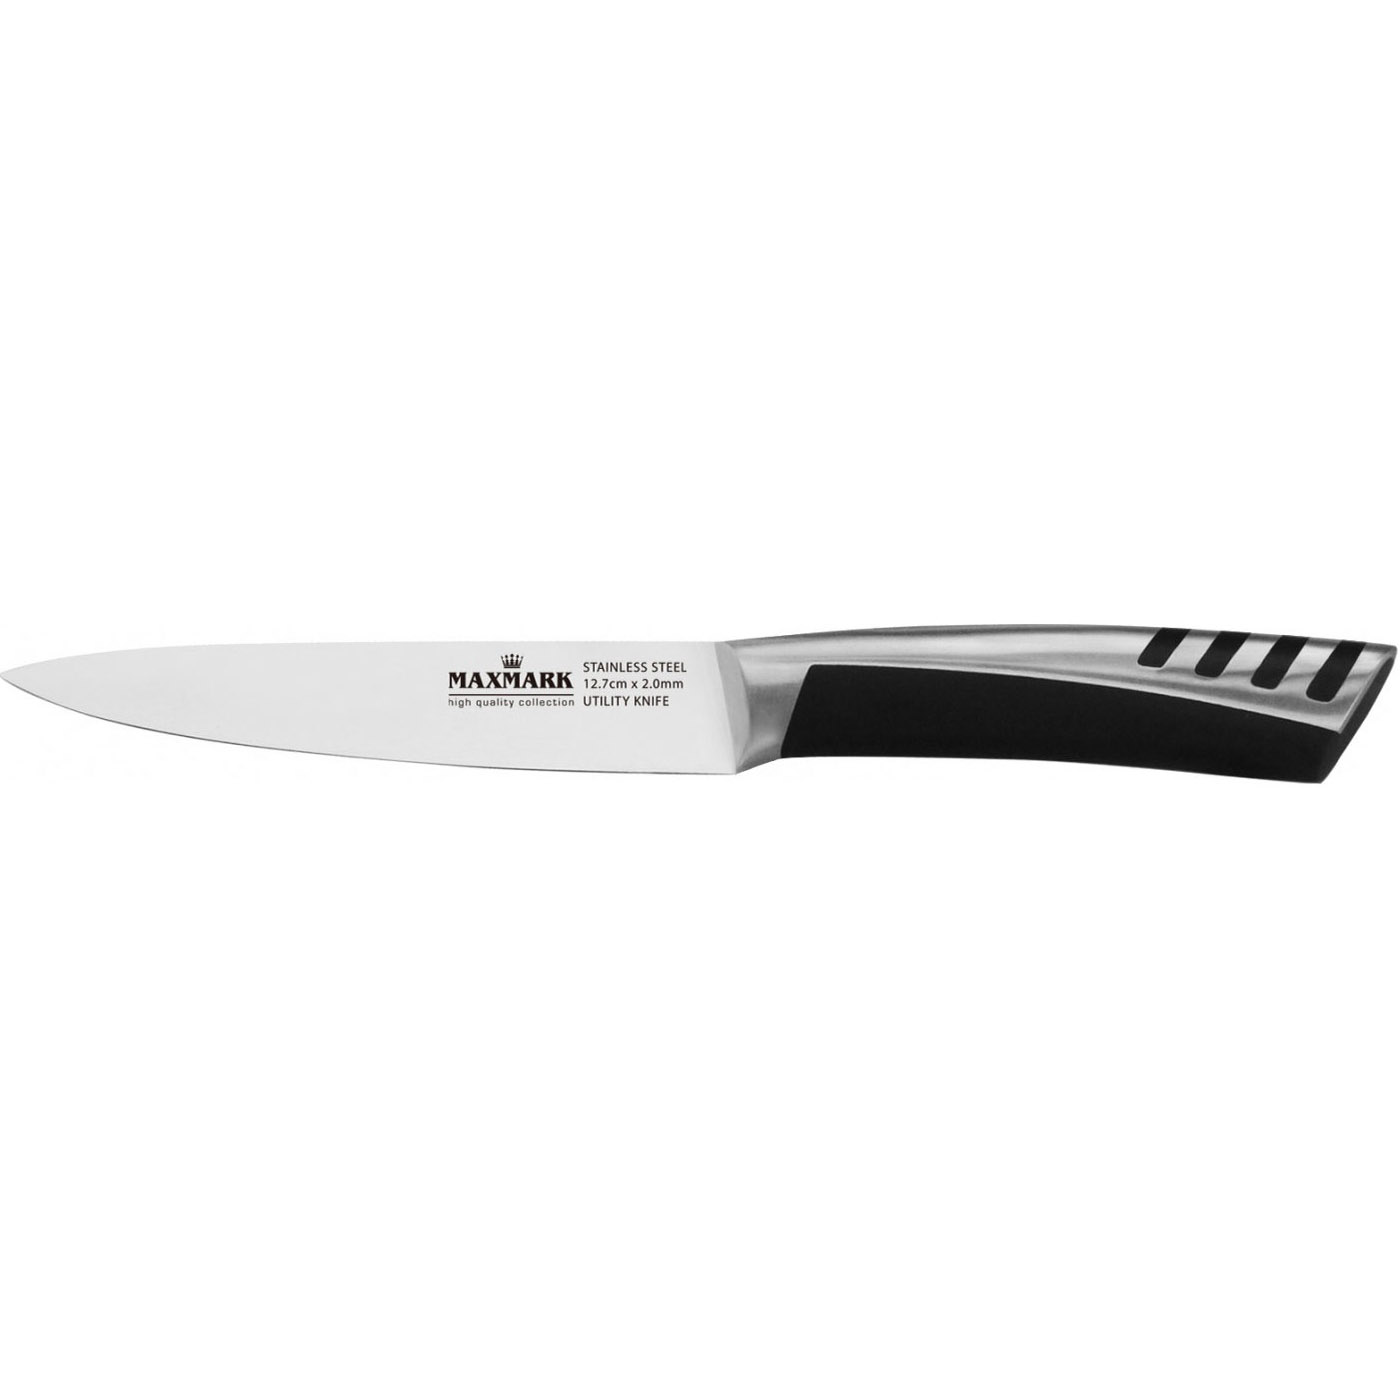 Кухонный нож Maxmark, 12,7 см, серебристый с черным (MK-K52) - фото 1